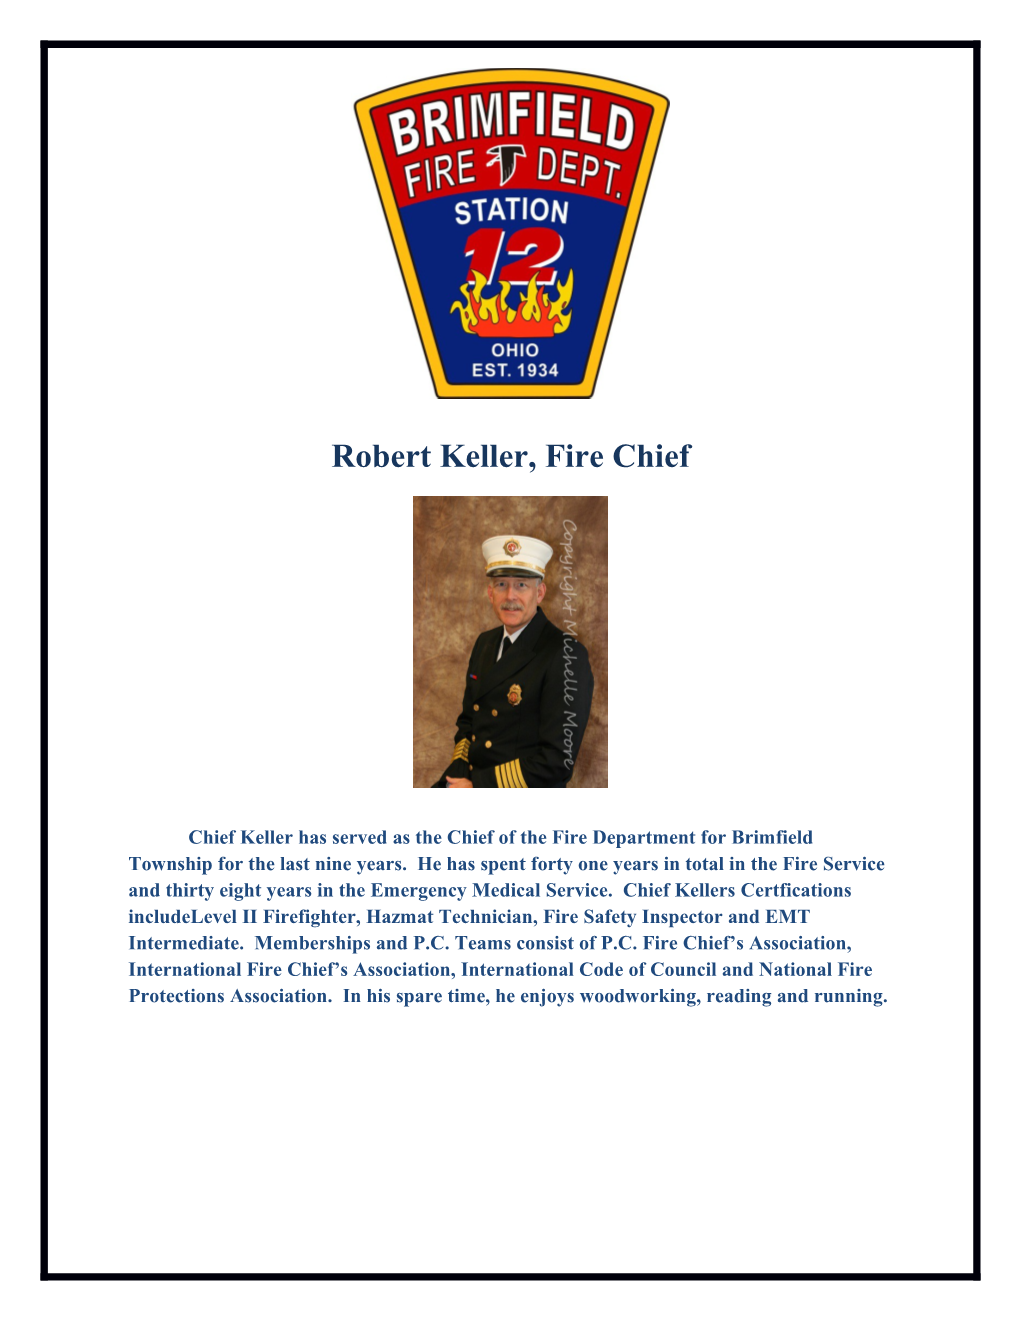 Robert Keller, Fire Chief